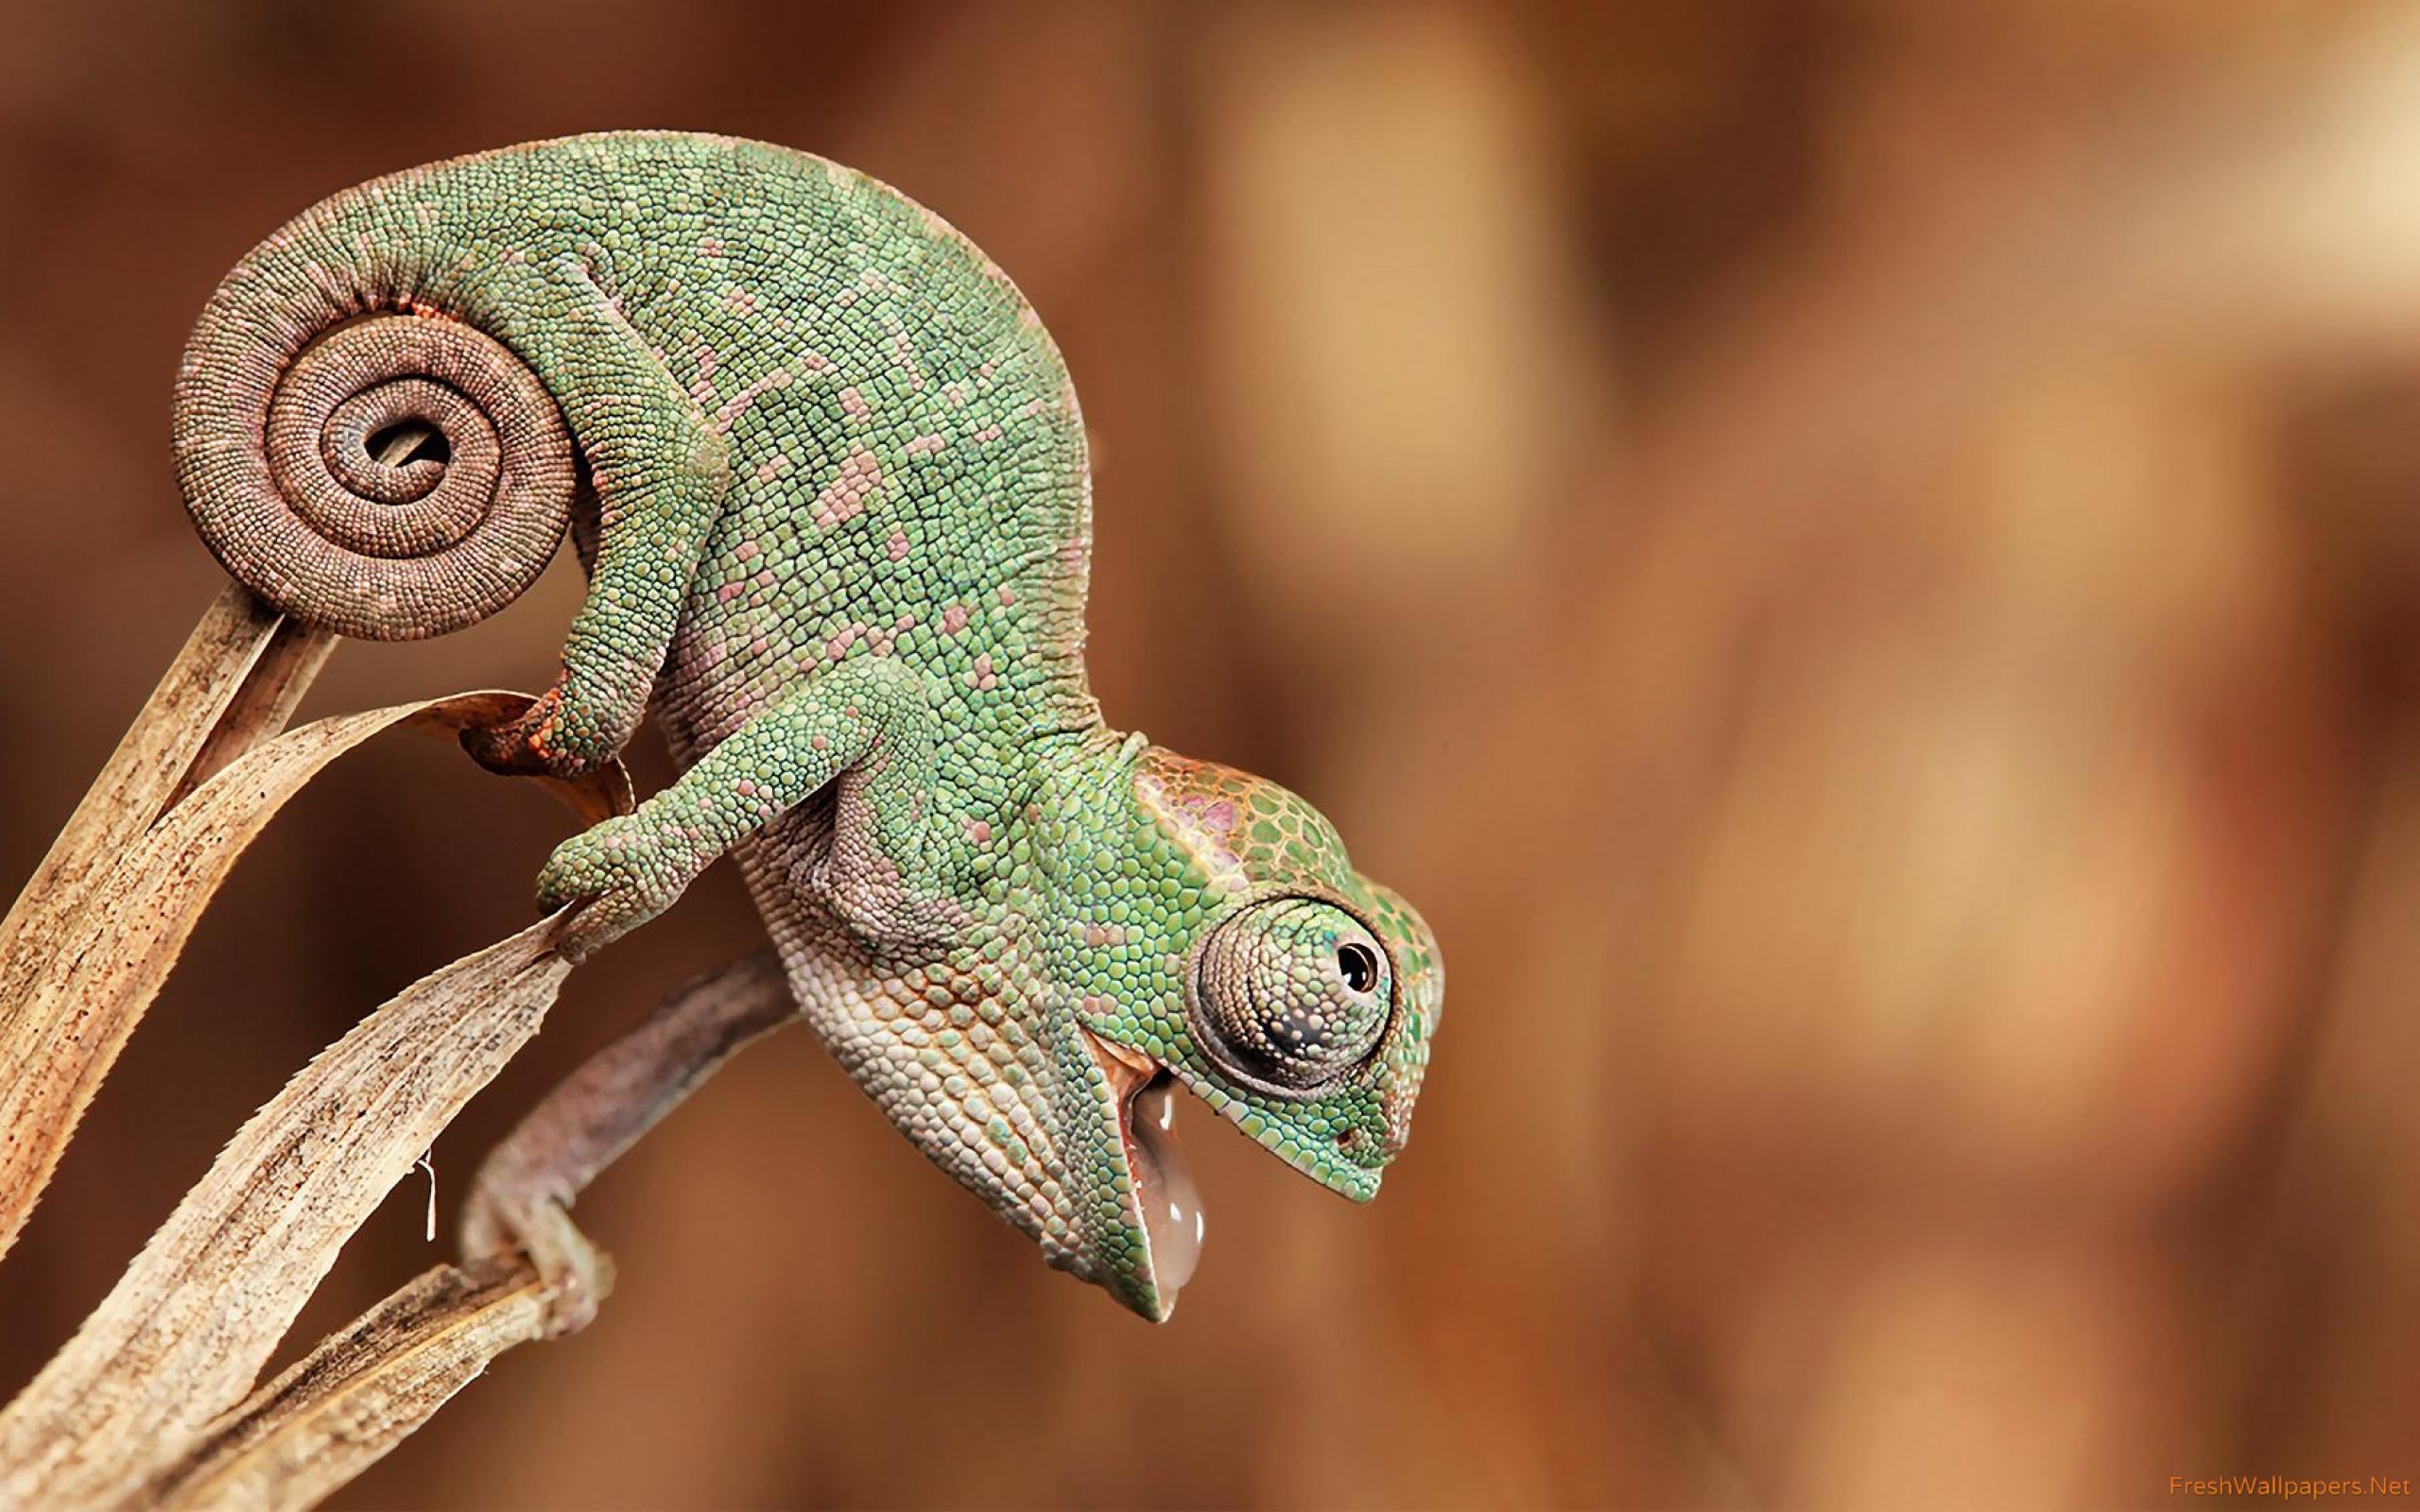 Baby Chameleon Wallpaper Freshwallpaper